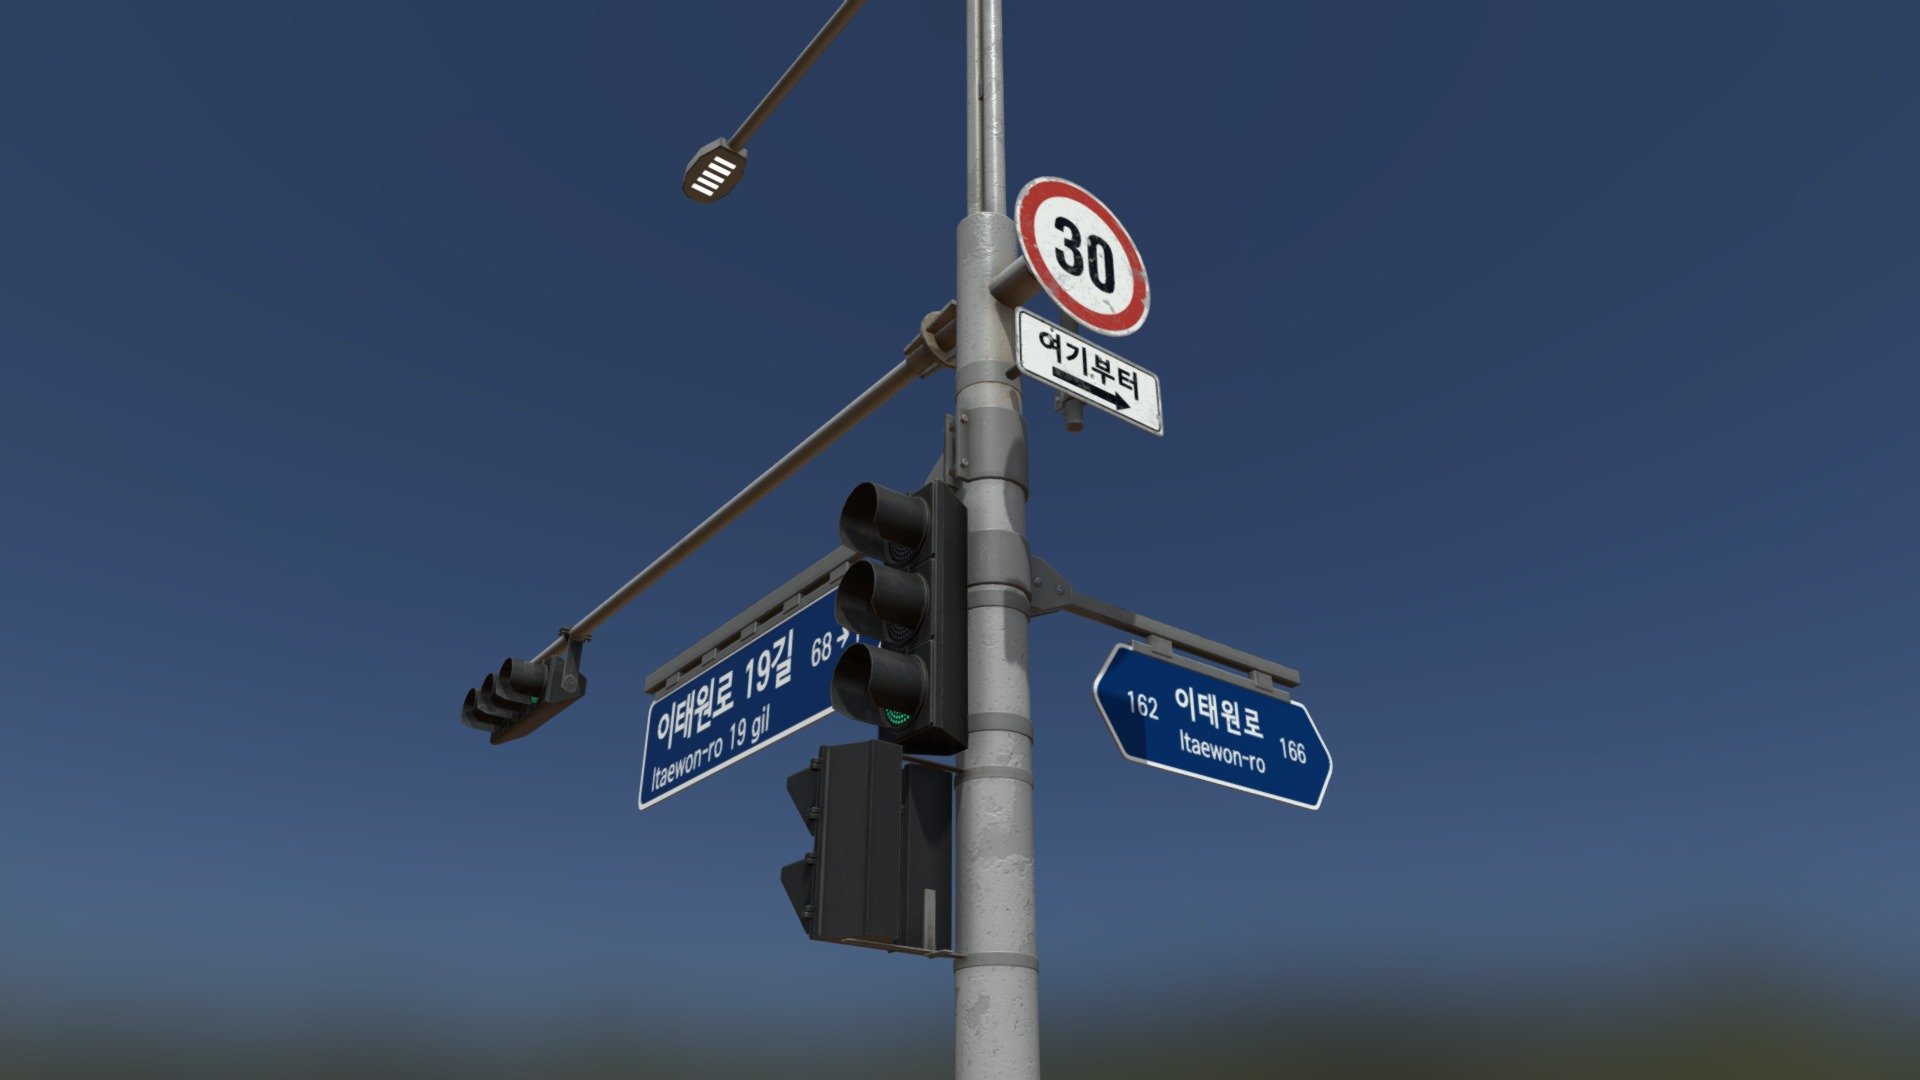 traffic light in KOREA
8 materials - traffic light (KOREA) - Buy Royalty Free 3D model by clon6767 3d model